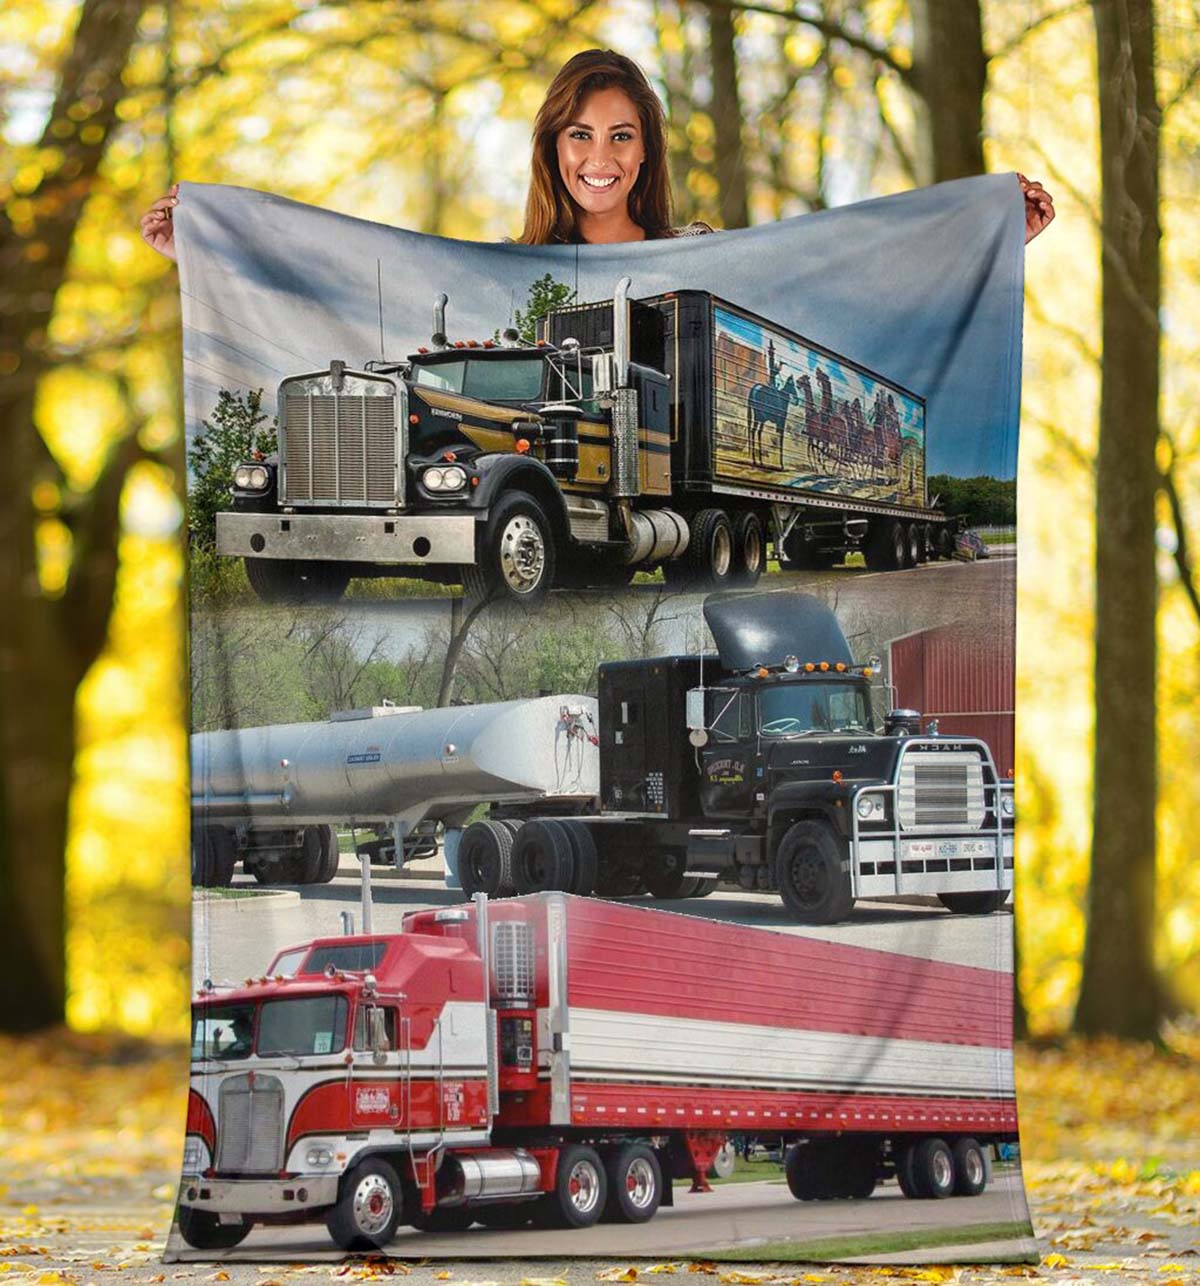 Trucks blanket